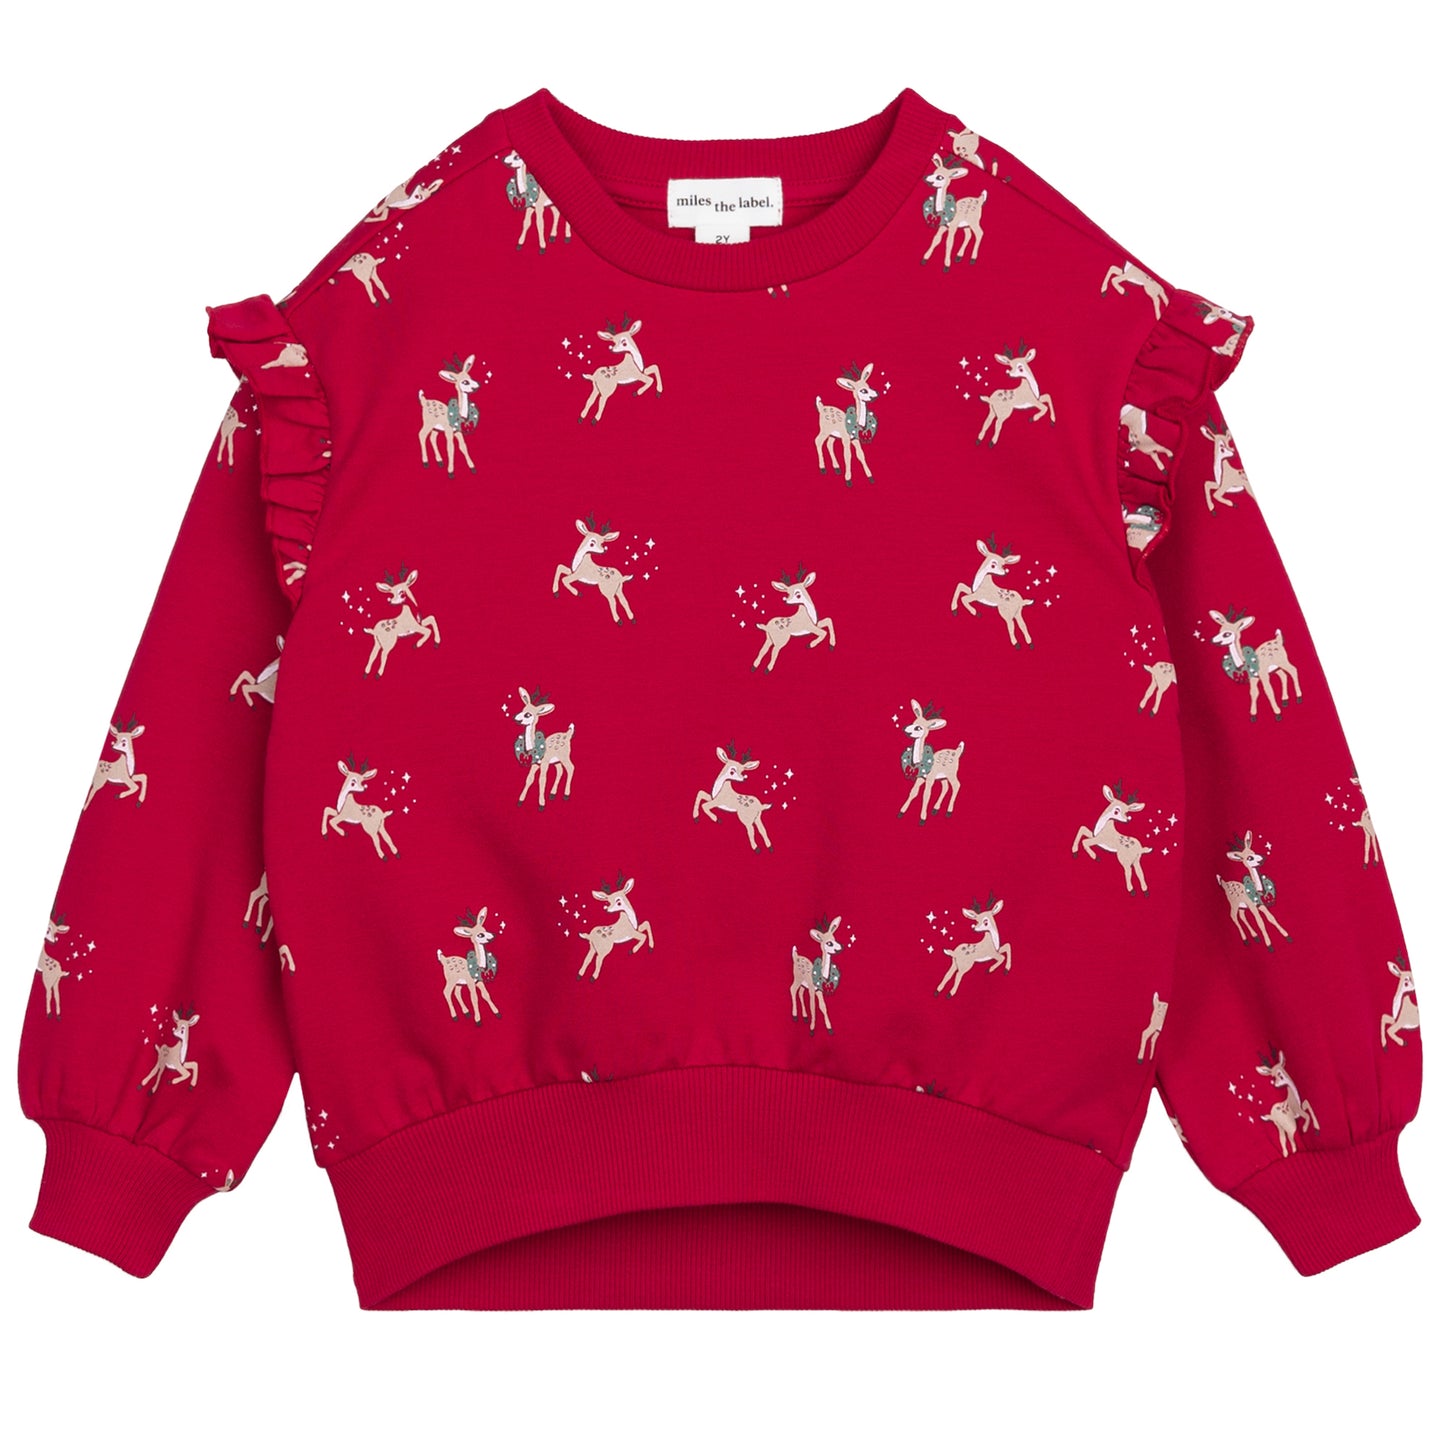 Fleece Ruffled Sweatshirt - Oh Reindeer